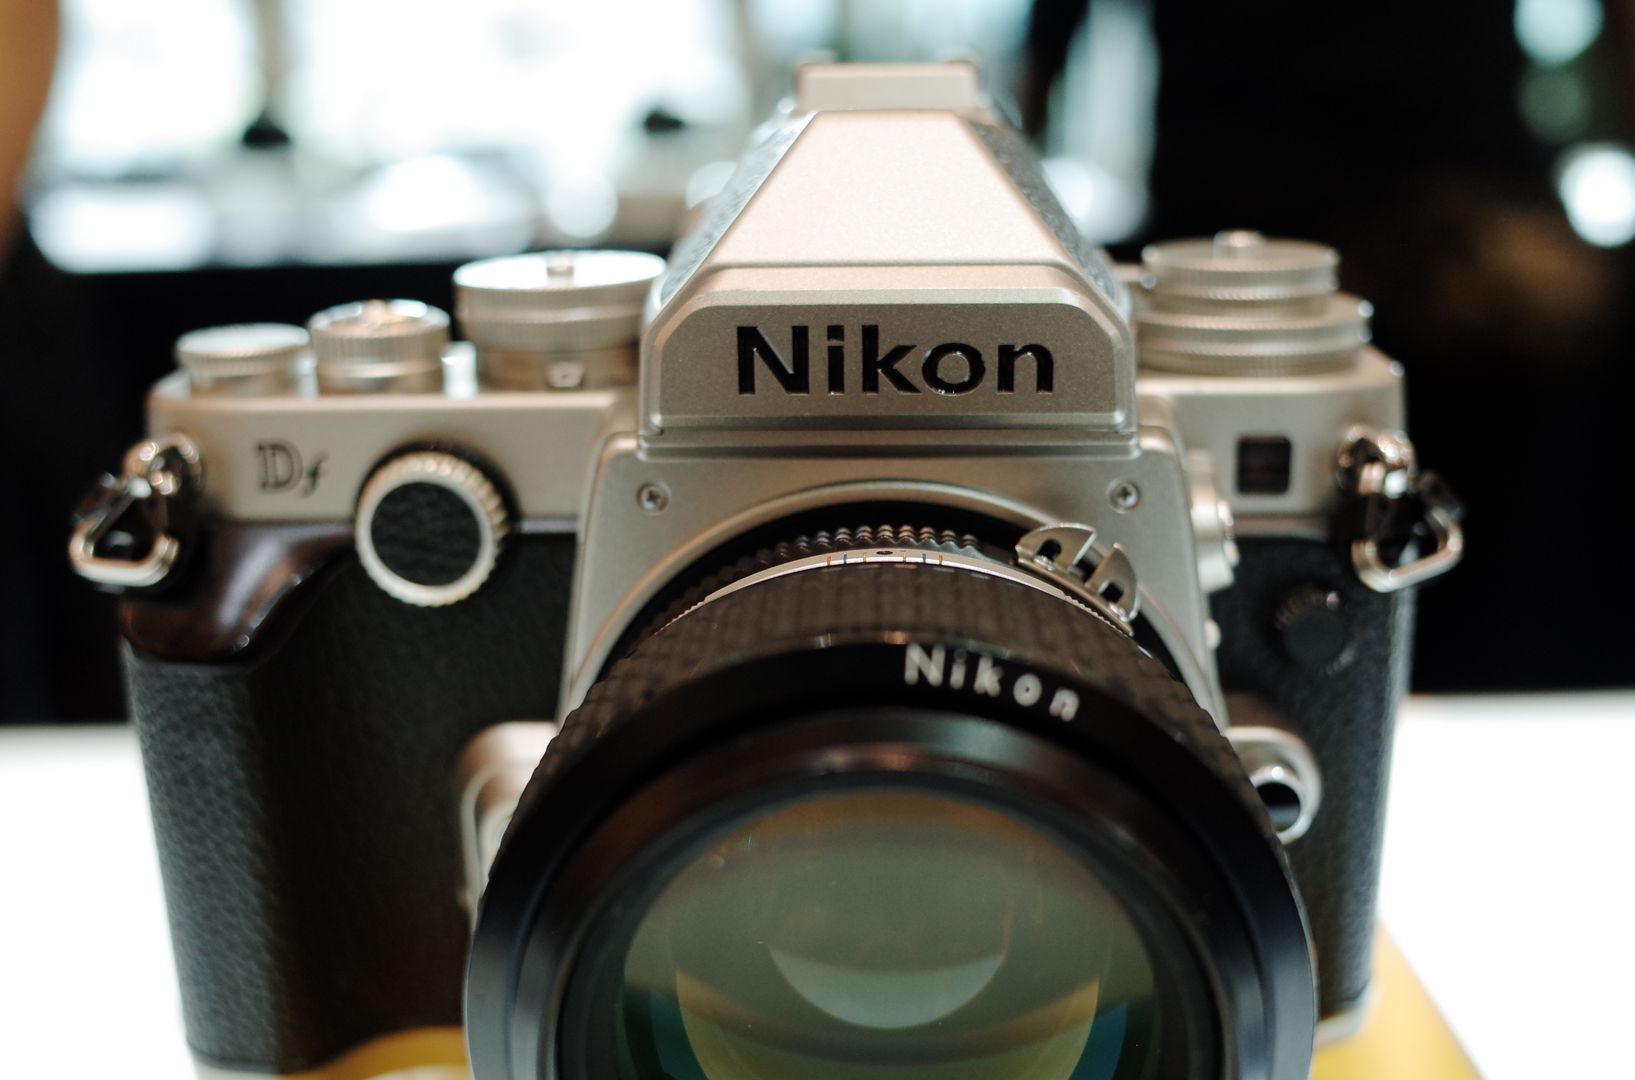 เปิดฉาก Nikon Day 2016 โชว์เทคโนโลยีล่าสุดในไทย